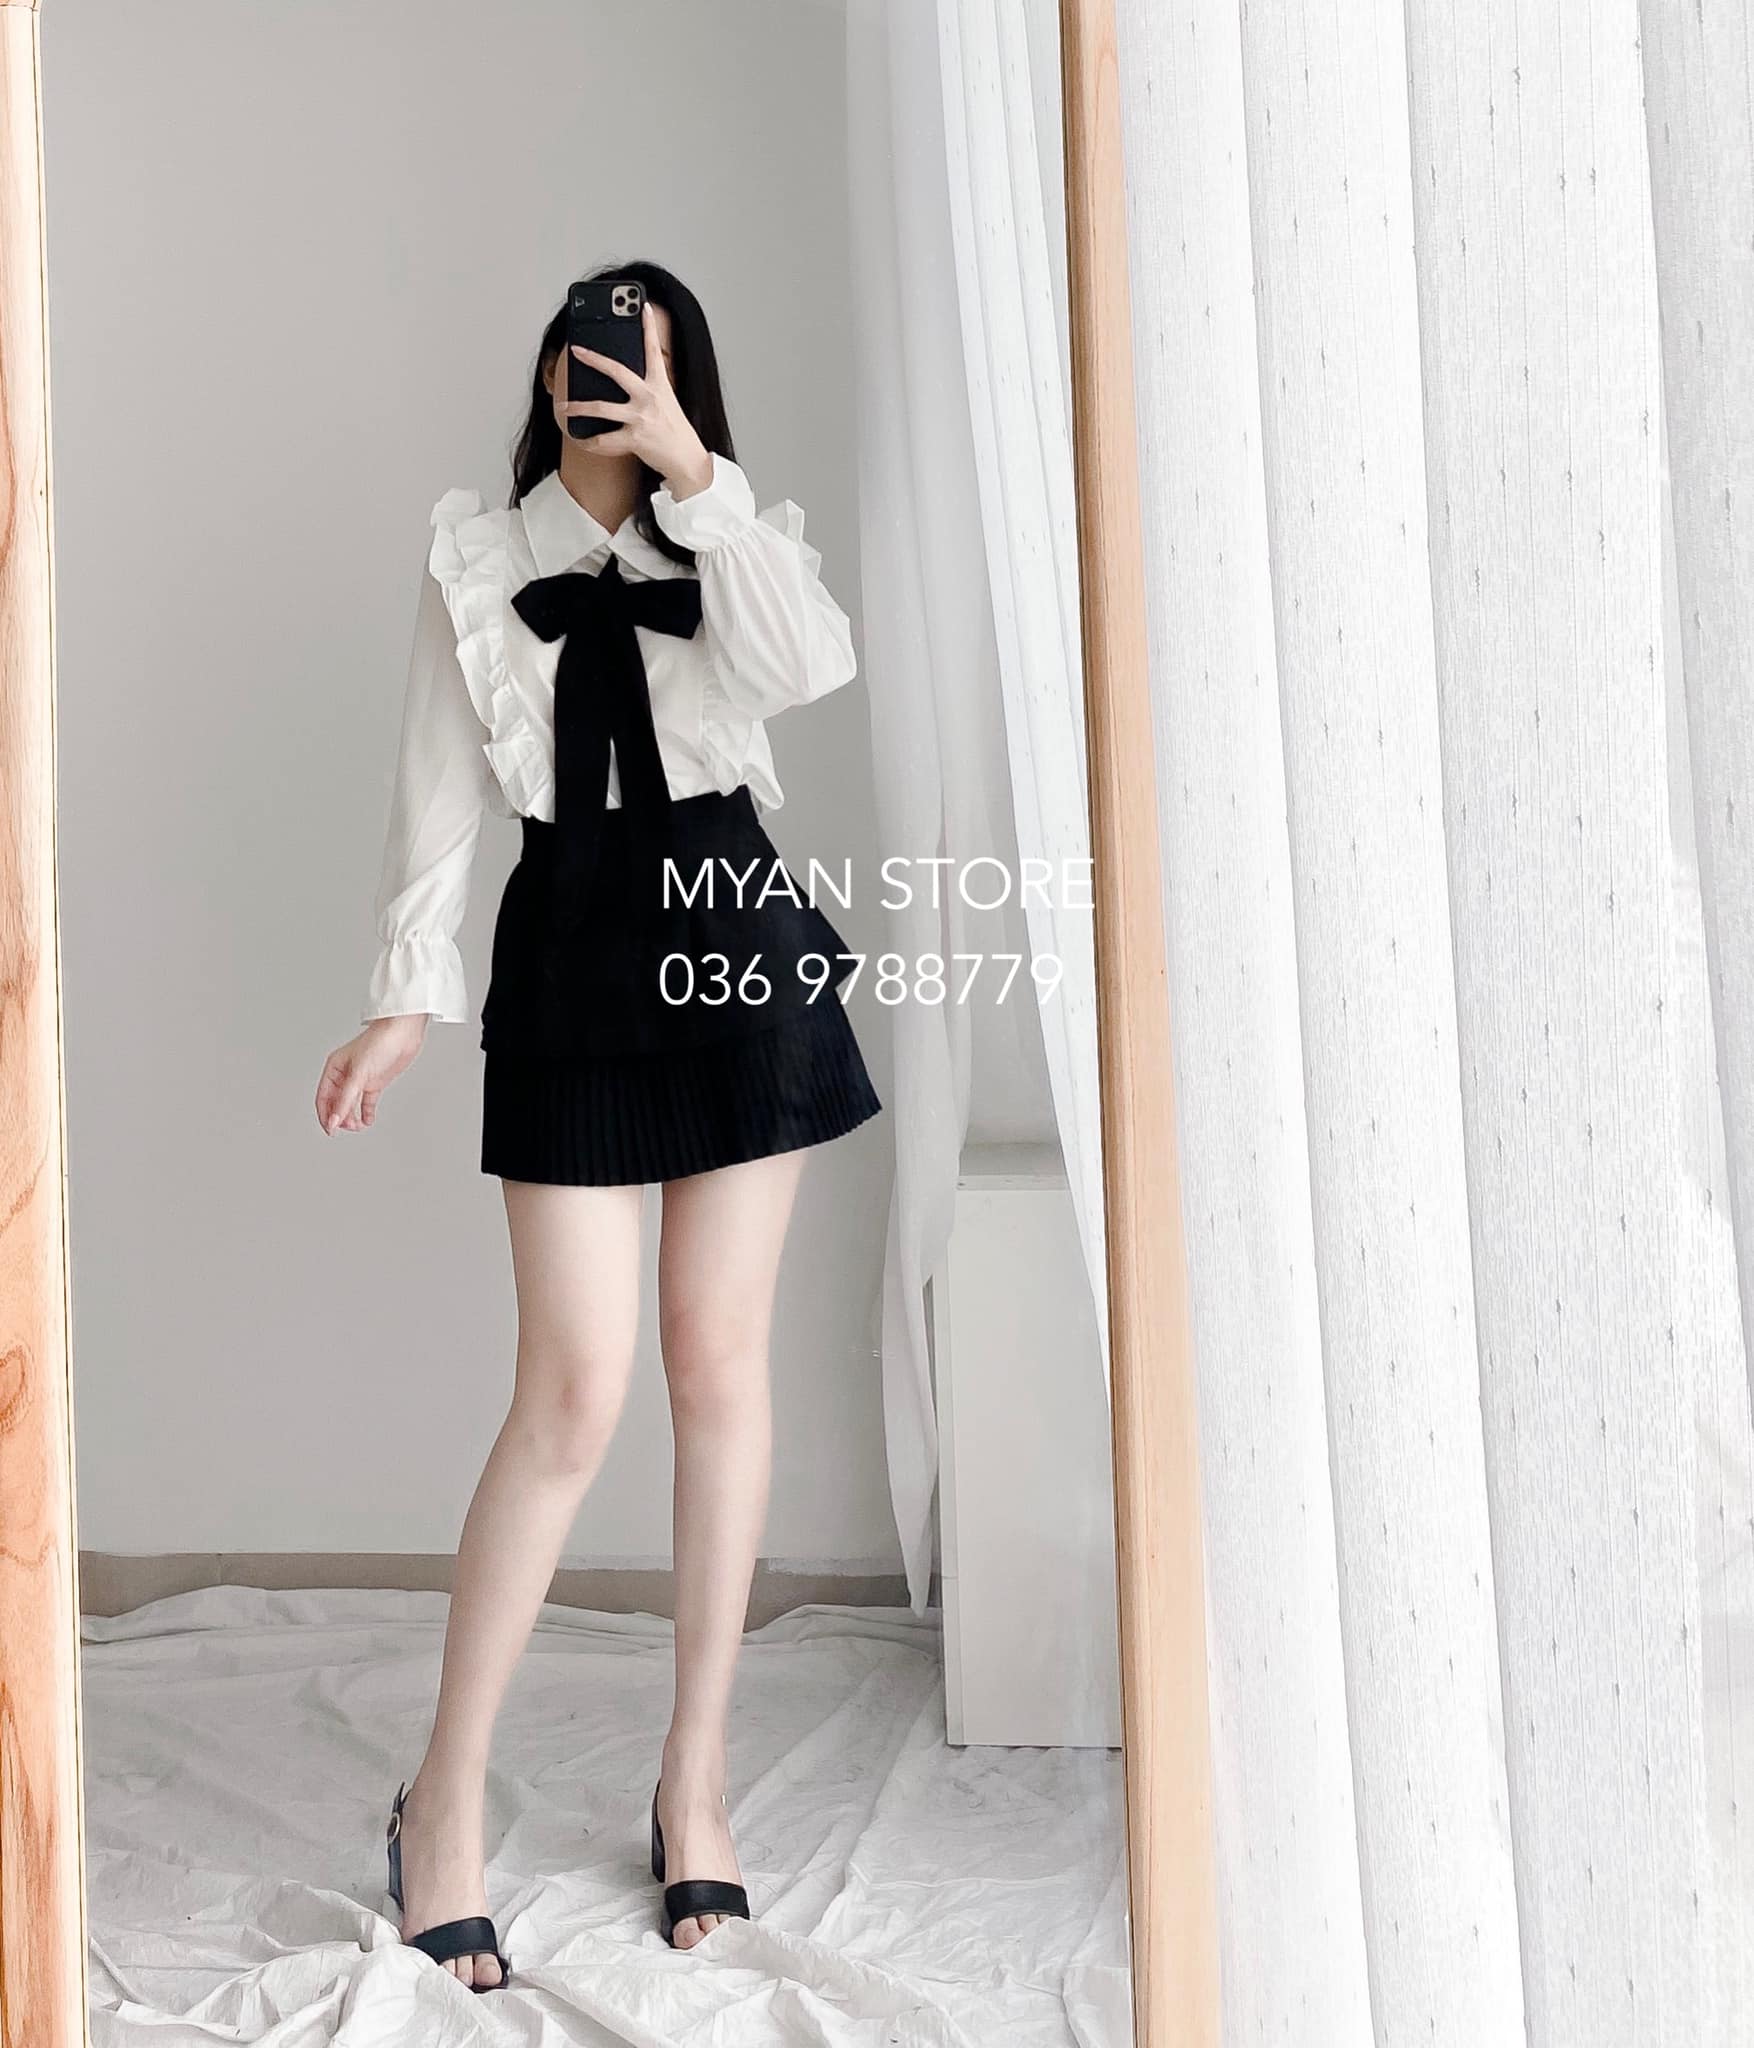 Váy đầm công sở đen trắng: Bí quyết giúp bạn mặc đẹp hơn mỗi ngày